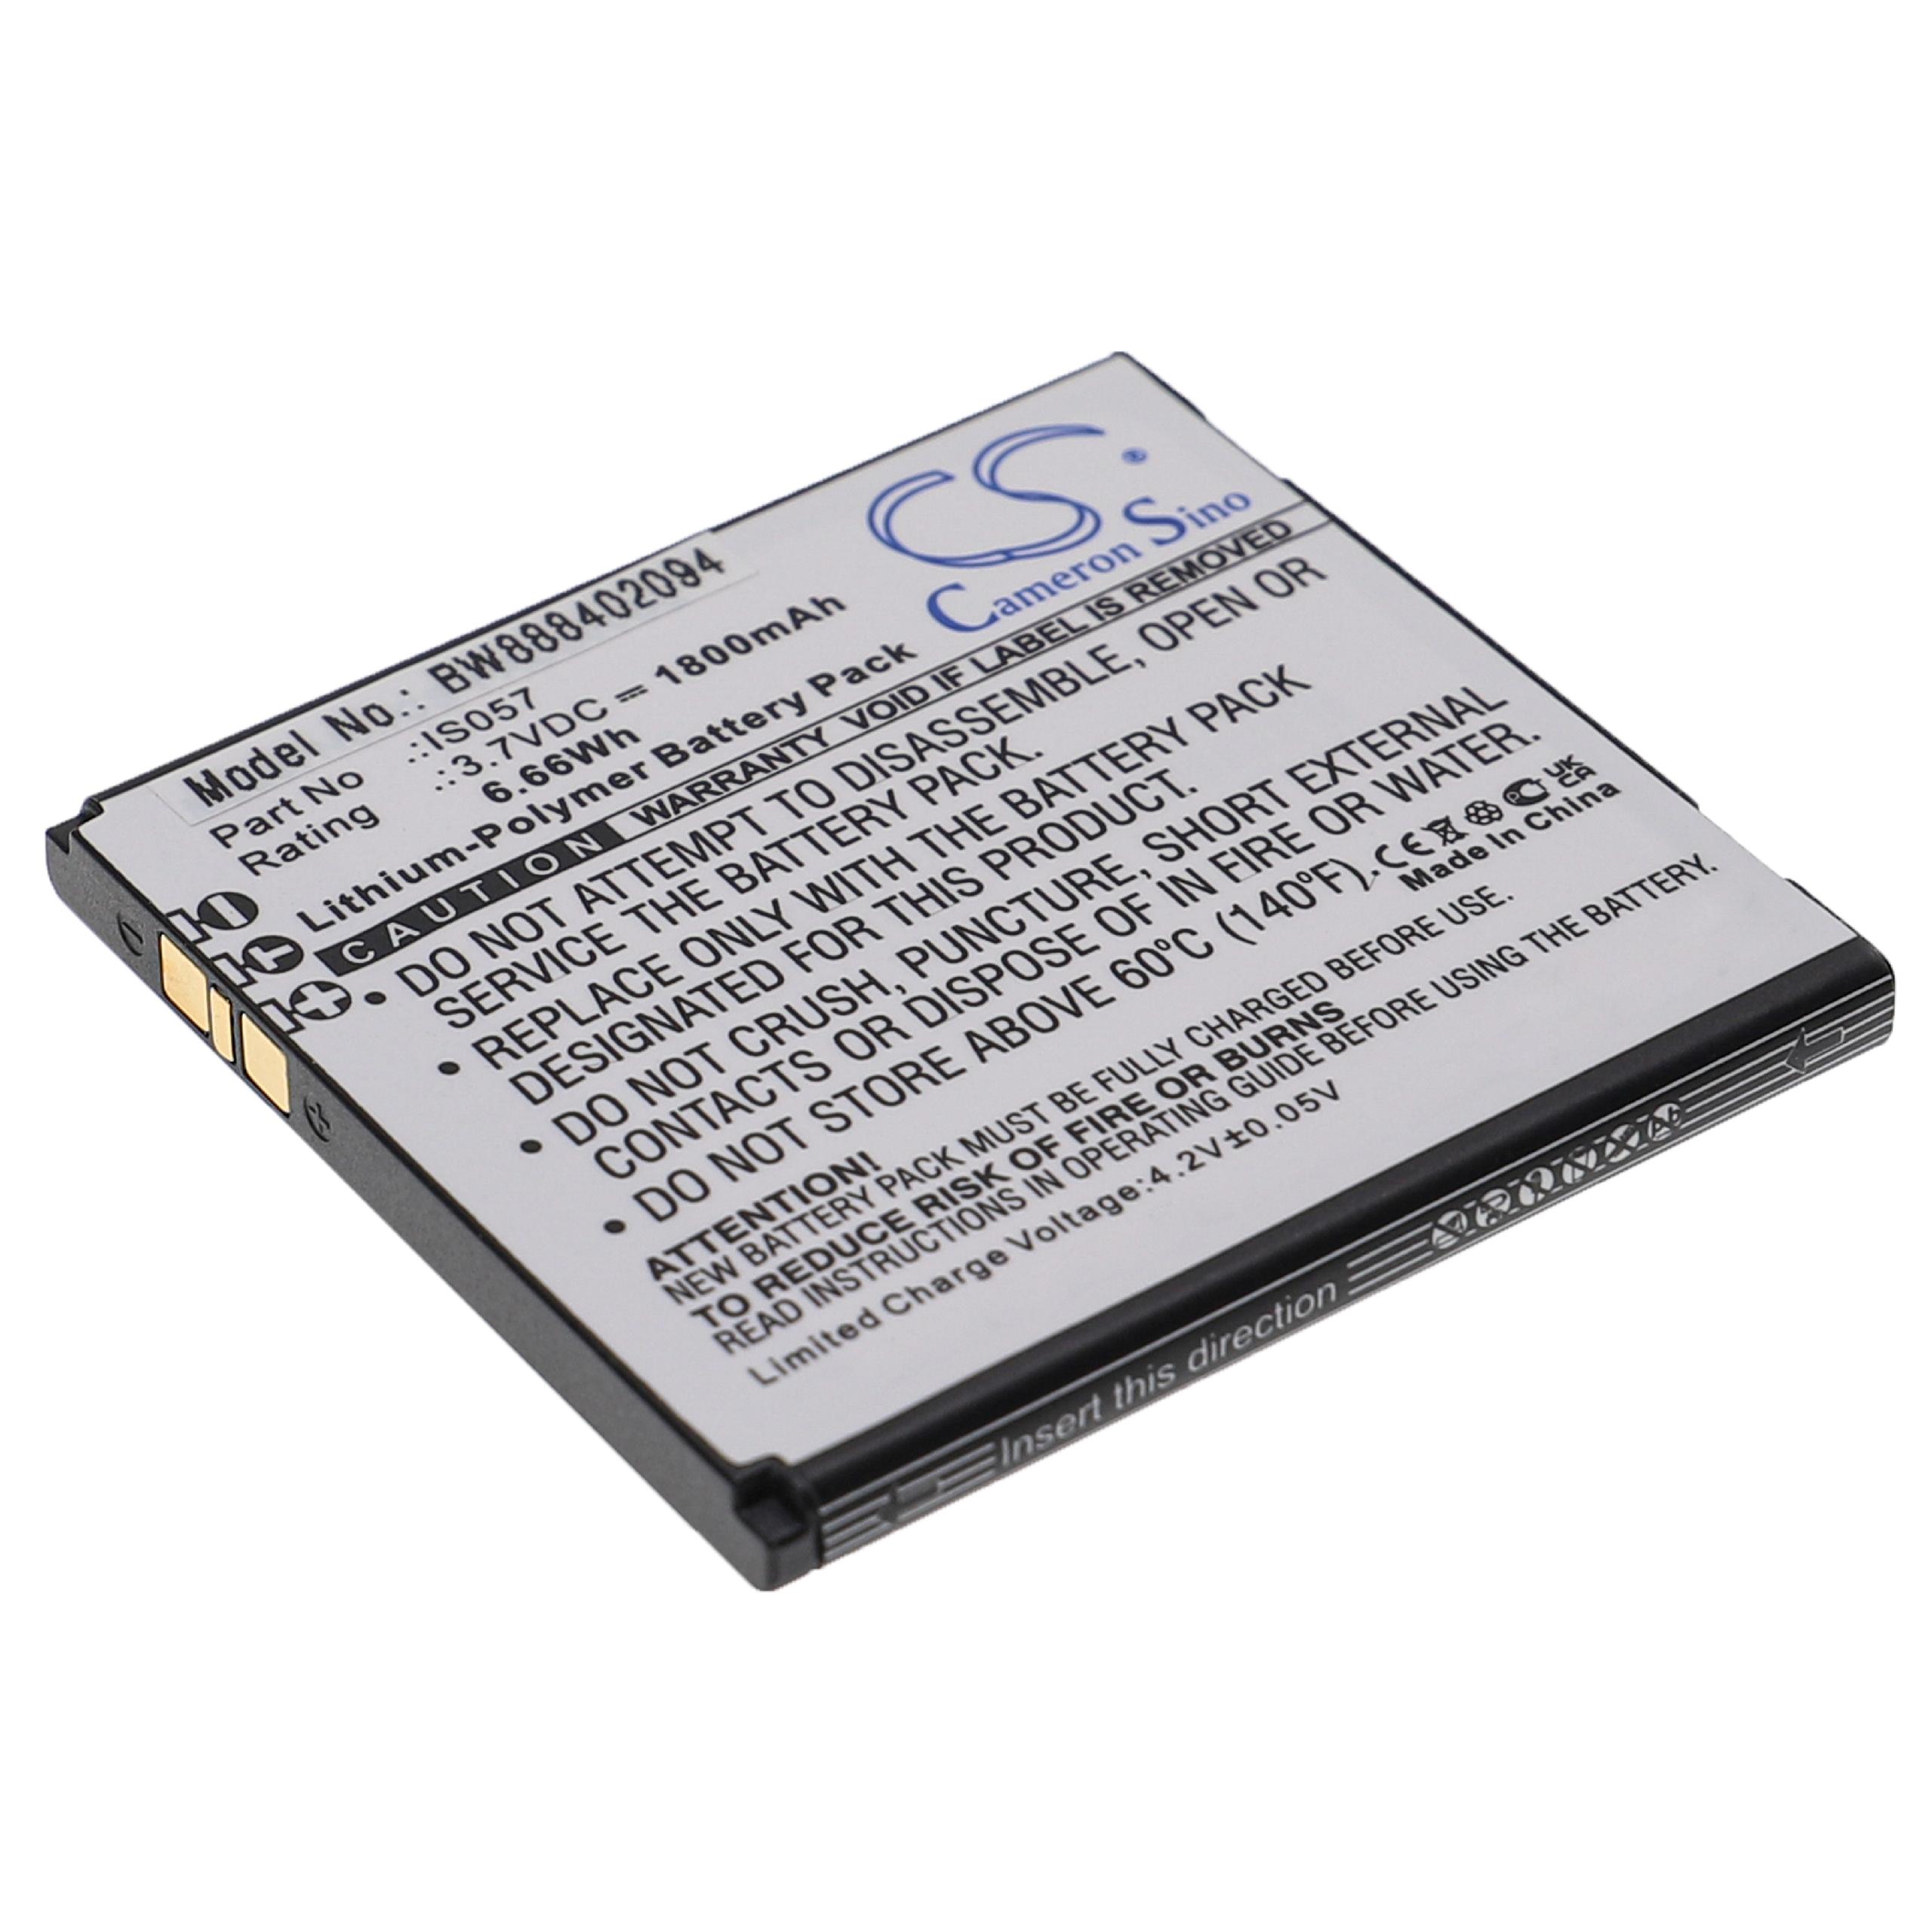 Batterie remplace Pax IS057 pour scanner de code-barre - 1800mAh 3,7V Li-polymère